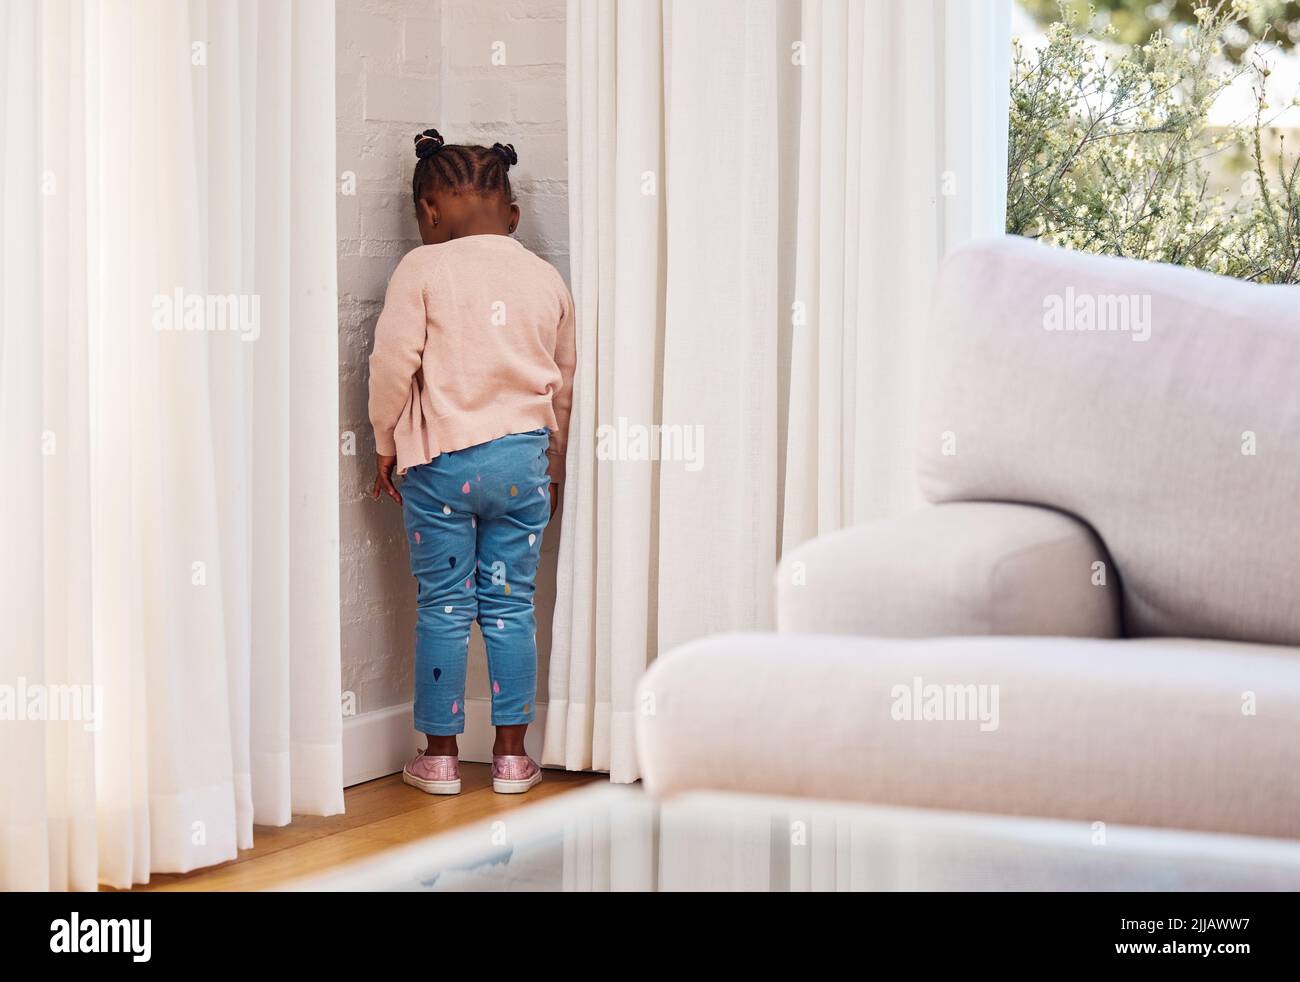 Shes è stato inviato al timeout. Una bambina in piedi in un angolo come una punizione a casa. Foto Stock